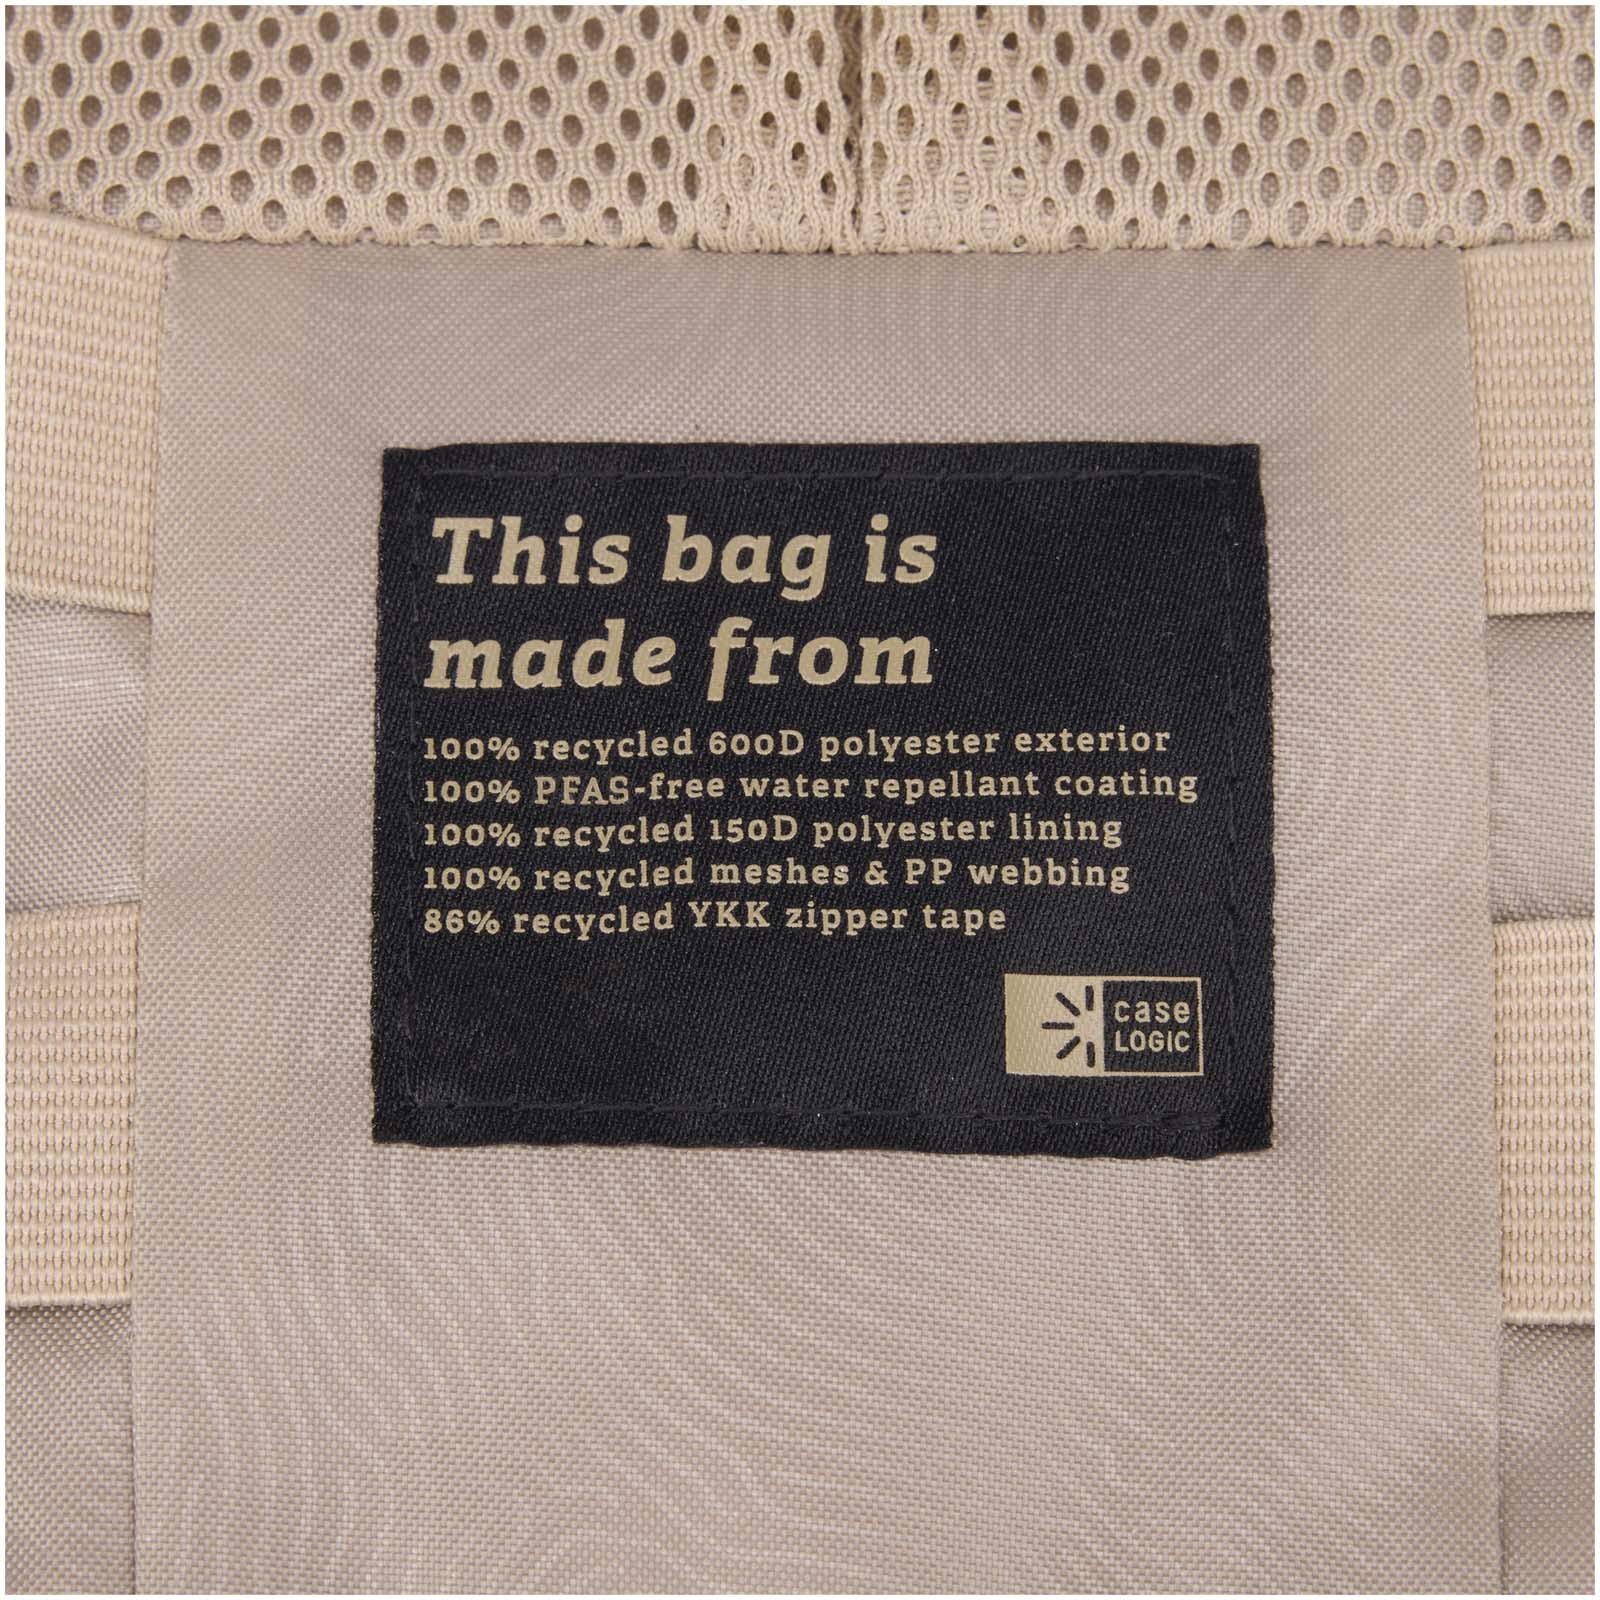 Advertising Travel Accessories - Case Logic Invigo accessories bag - 6